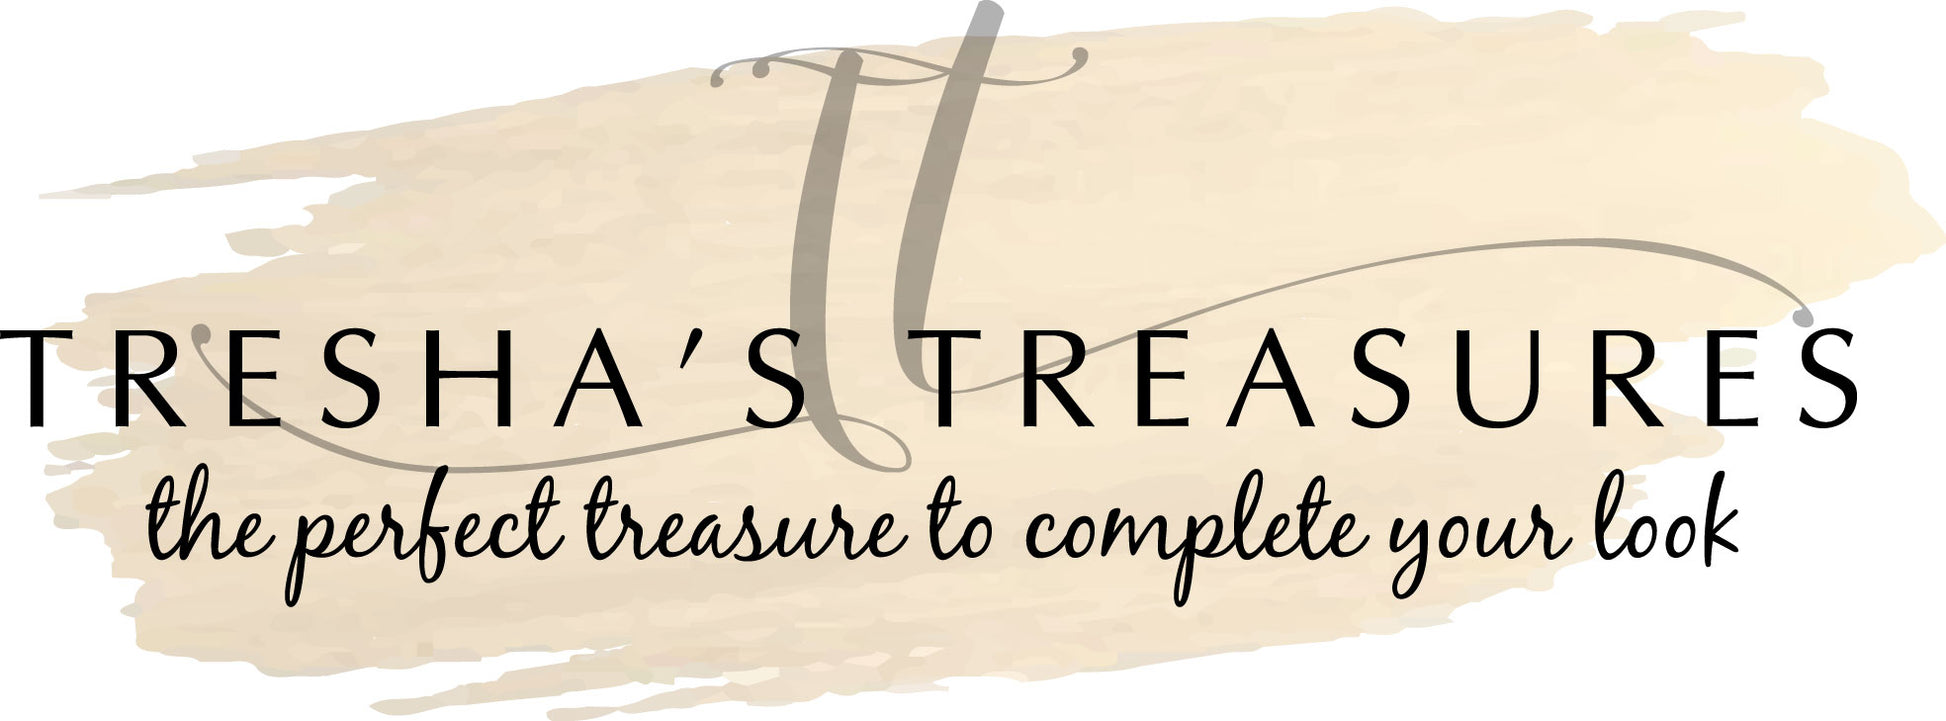 Tresha's Treasures Gift Card - Tresha's Treasures